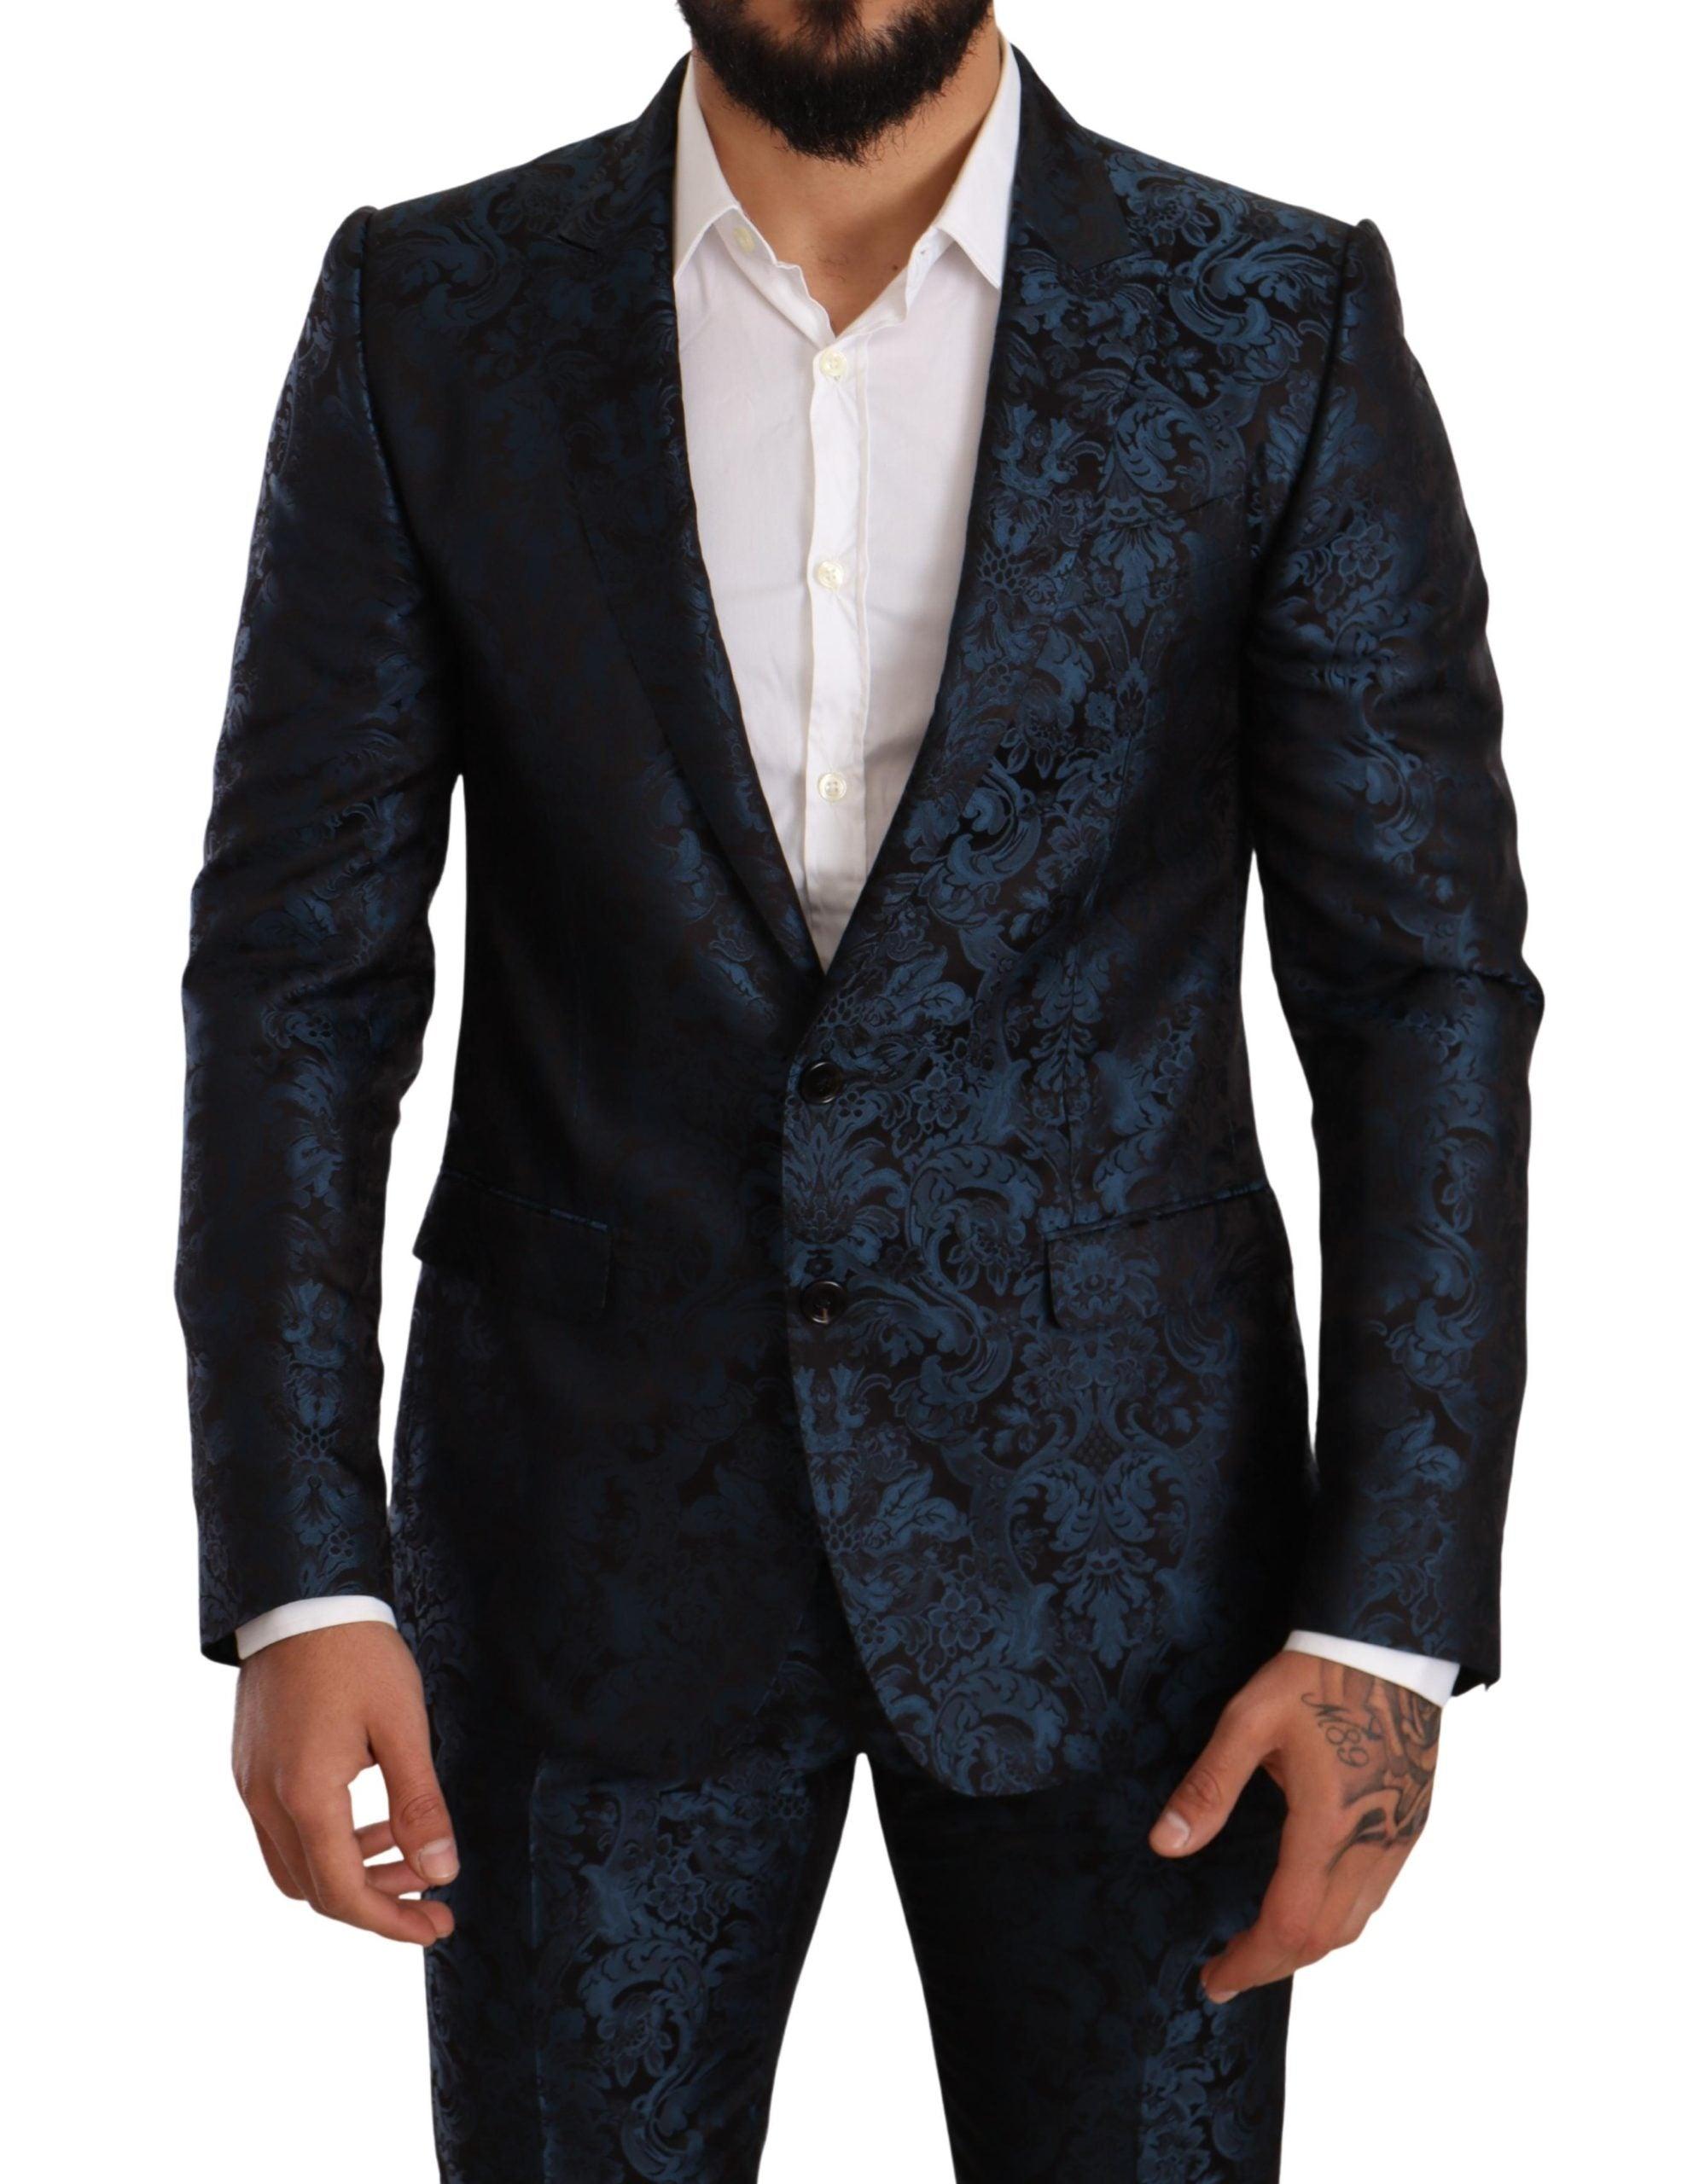 Dolce & Gabbana Silk Blue Black Jacquard 2 Piece Set Martini Suit for Men Mens Clothing Suits 